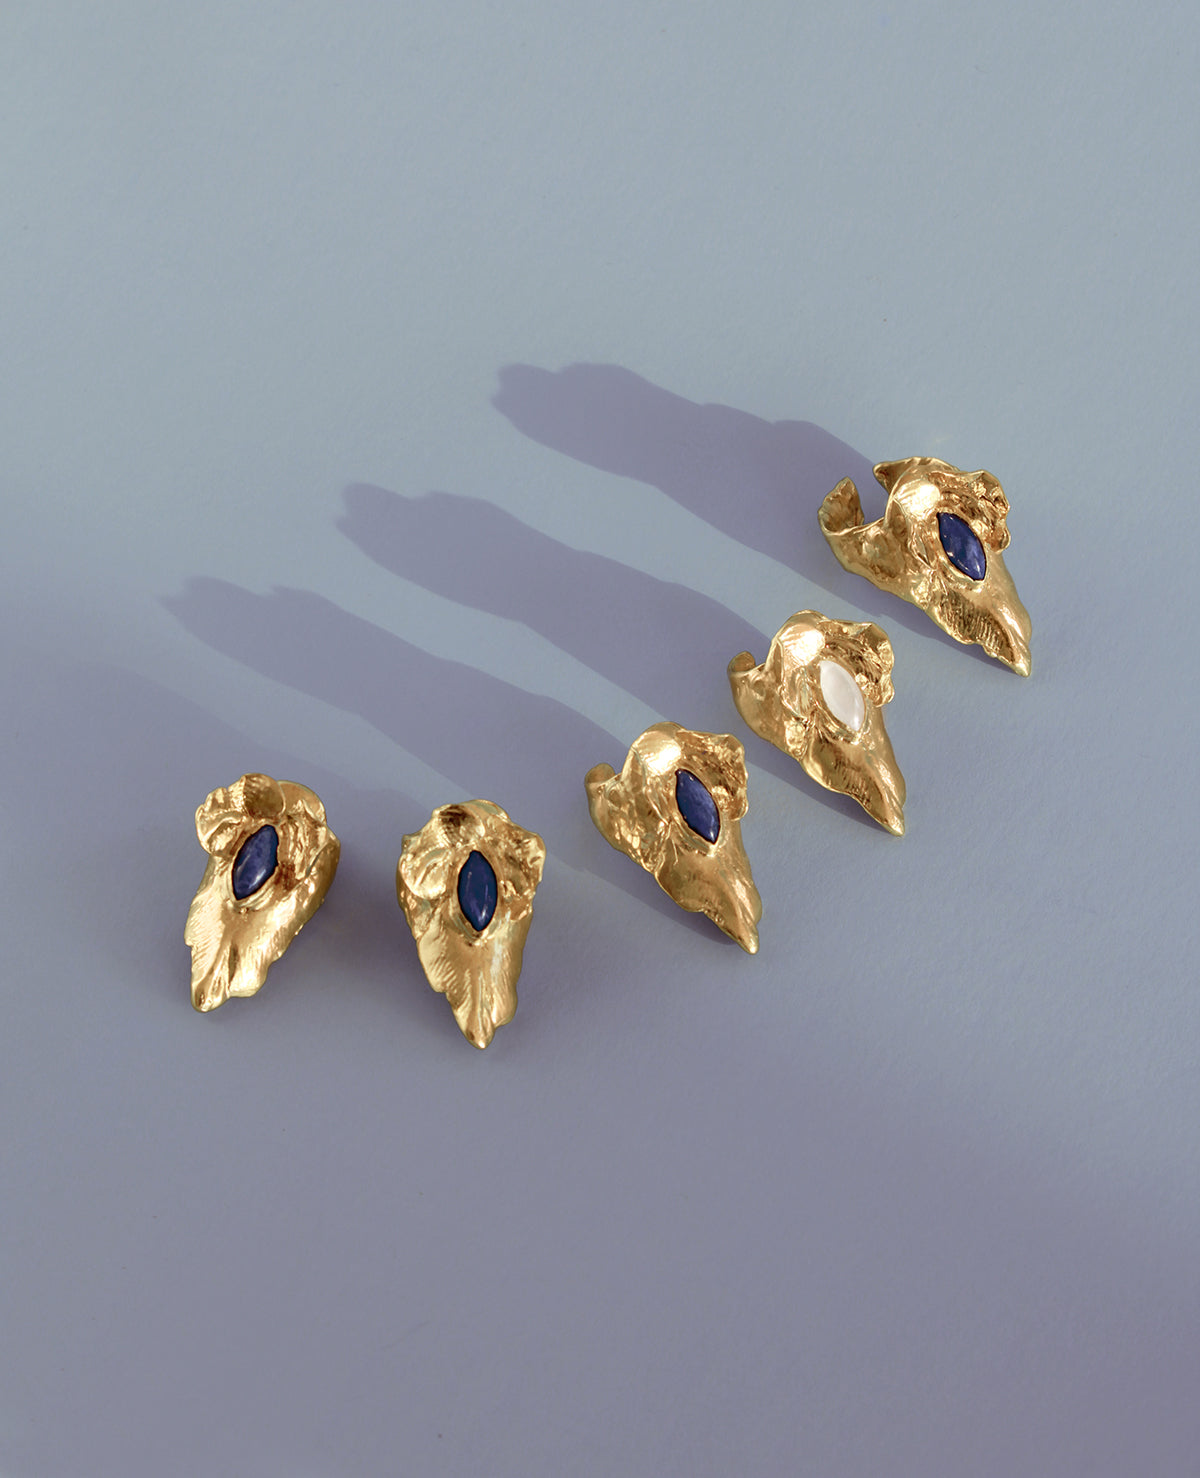 ORCHIS CLAW // doré bague pour ongles - ORA-C jewelry - bijoux artisanaux de la designer indépendante montréalaise Caroline Pham